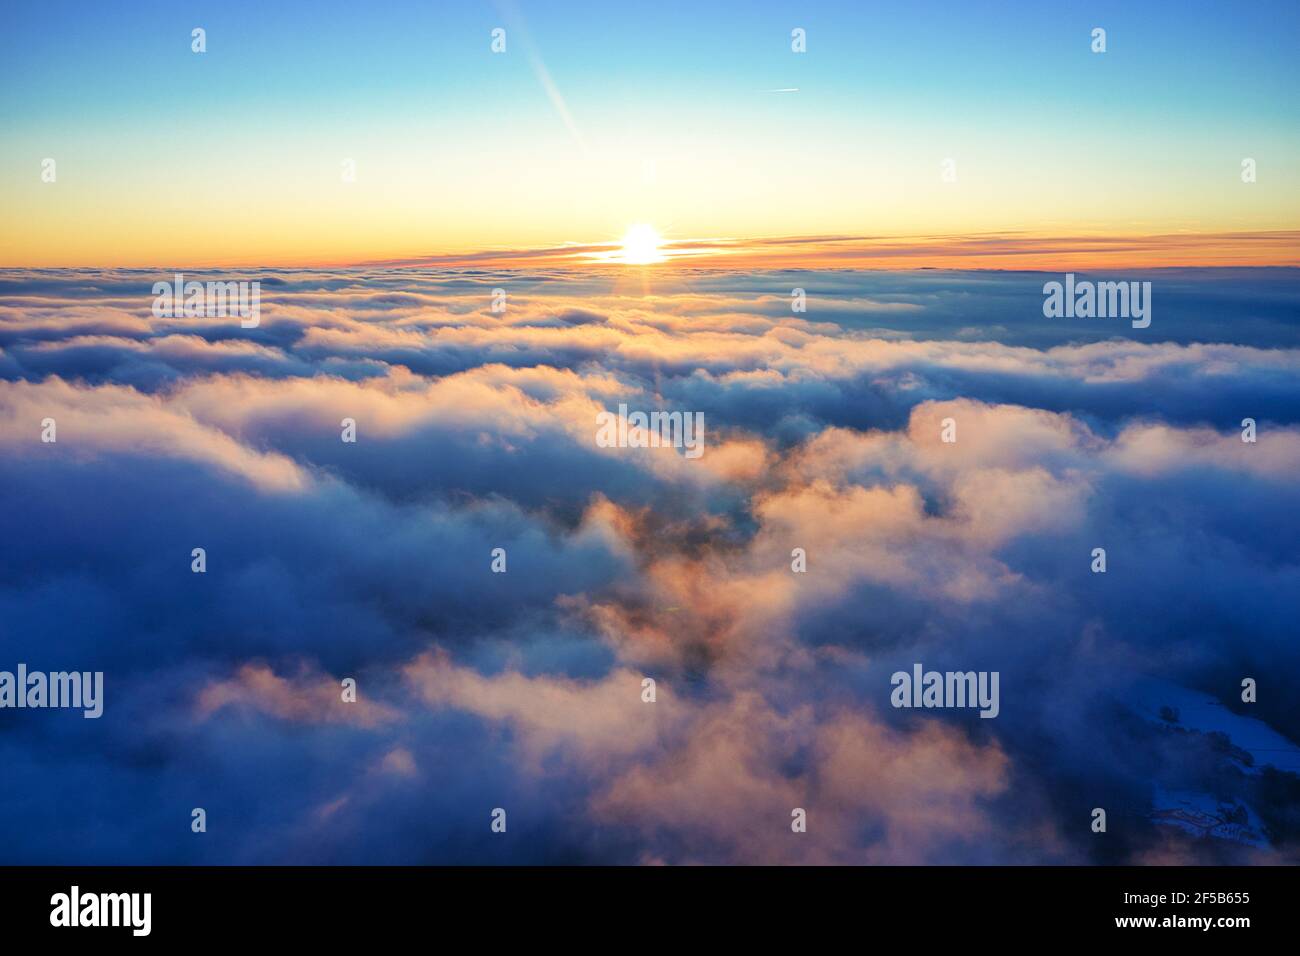 Luftaufnahme vom winterlichen und nebligen Sonnenaufgang auf dem Hohen Meißner Foto Stock